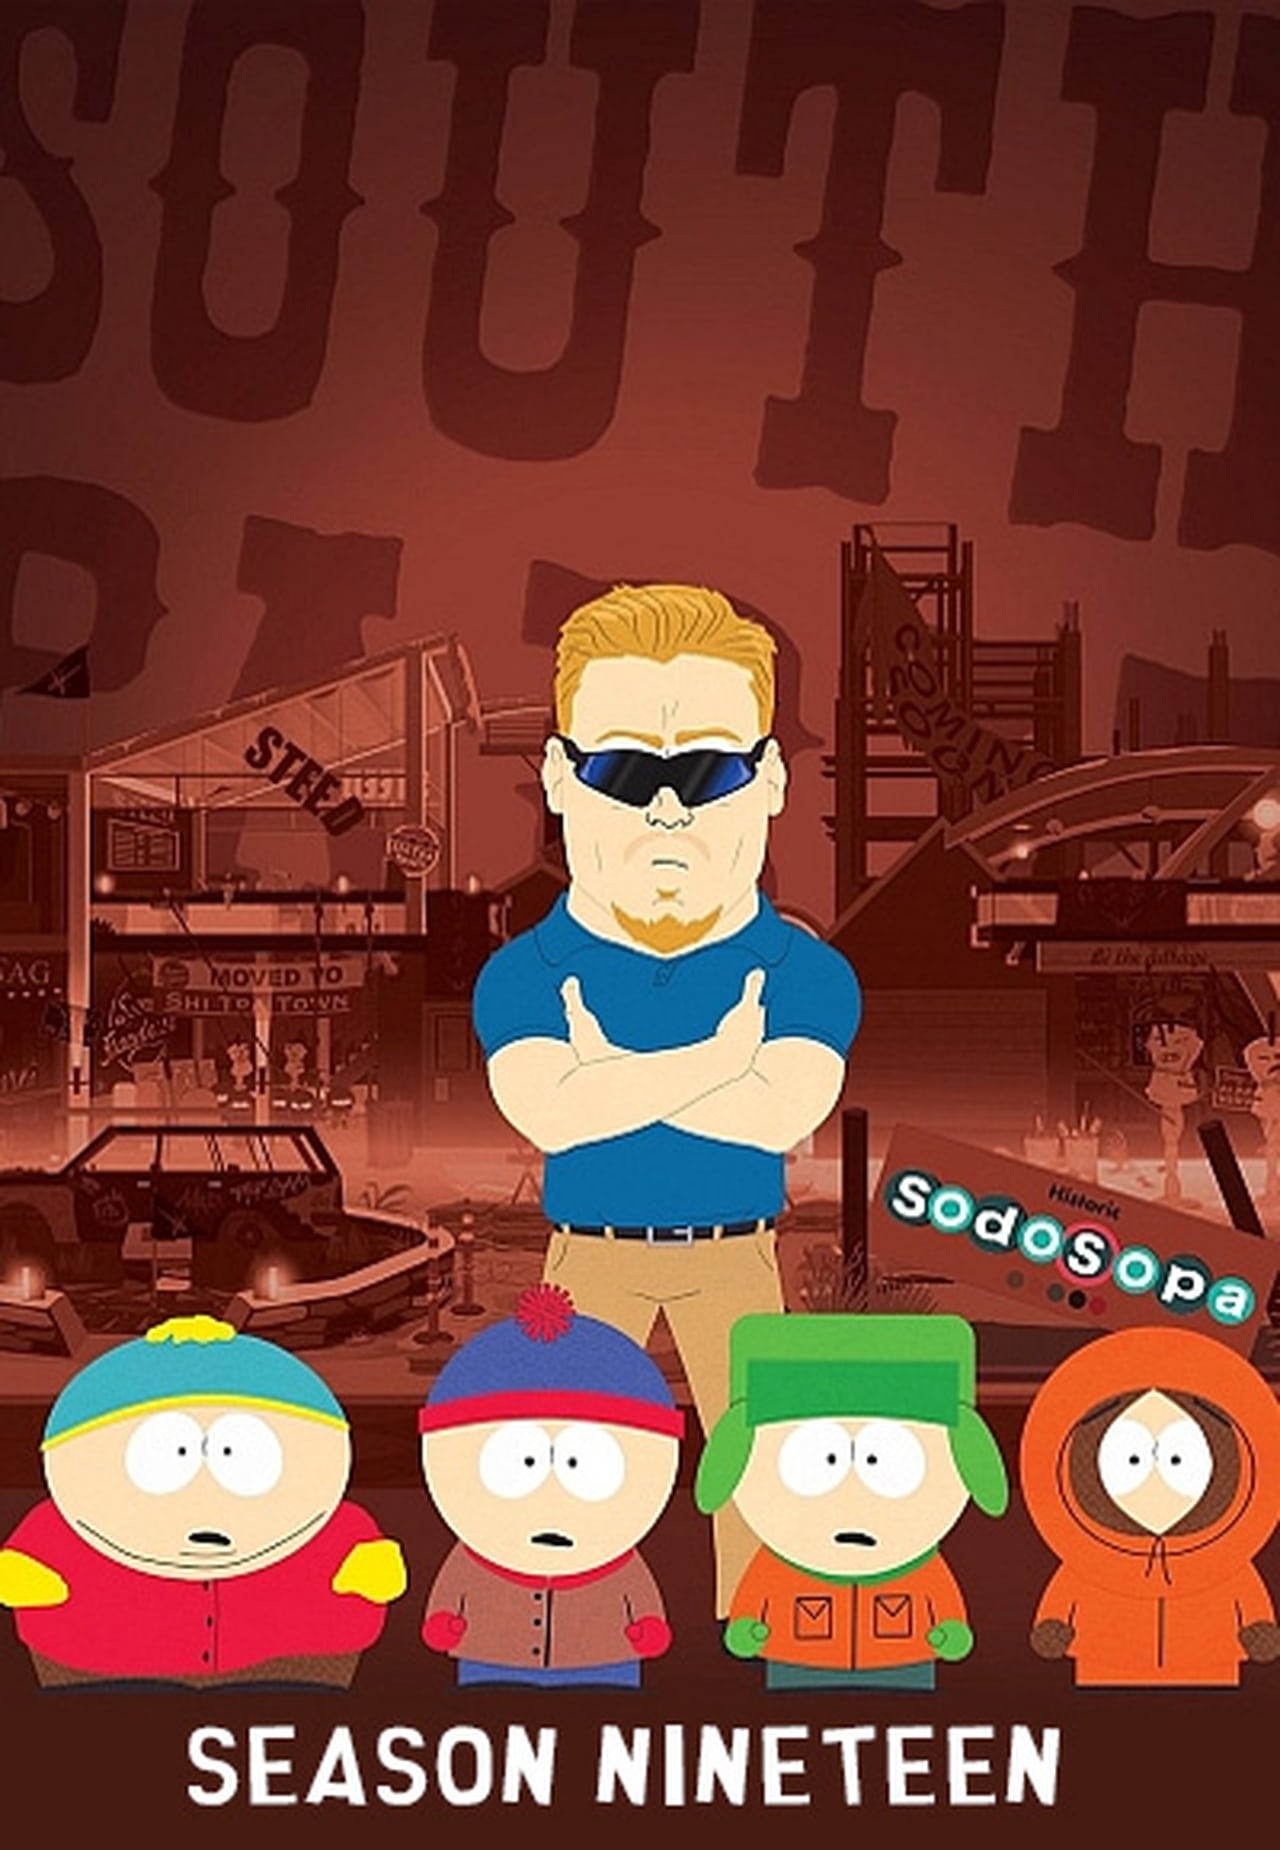 Image South Park